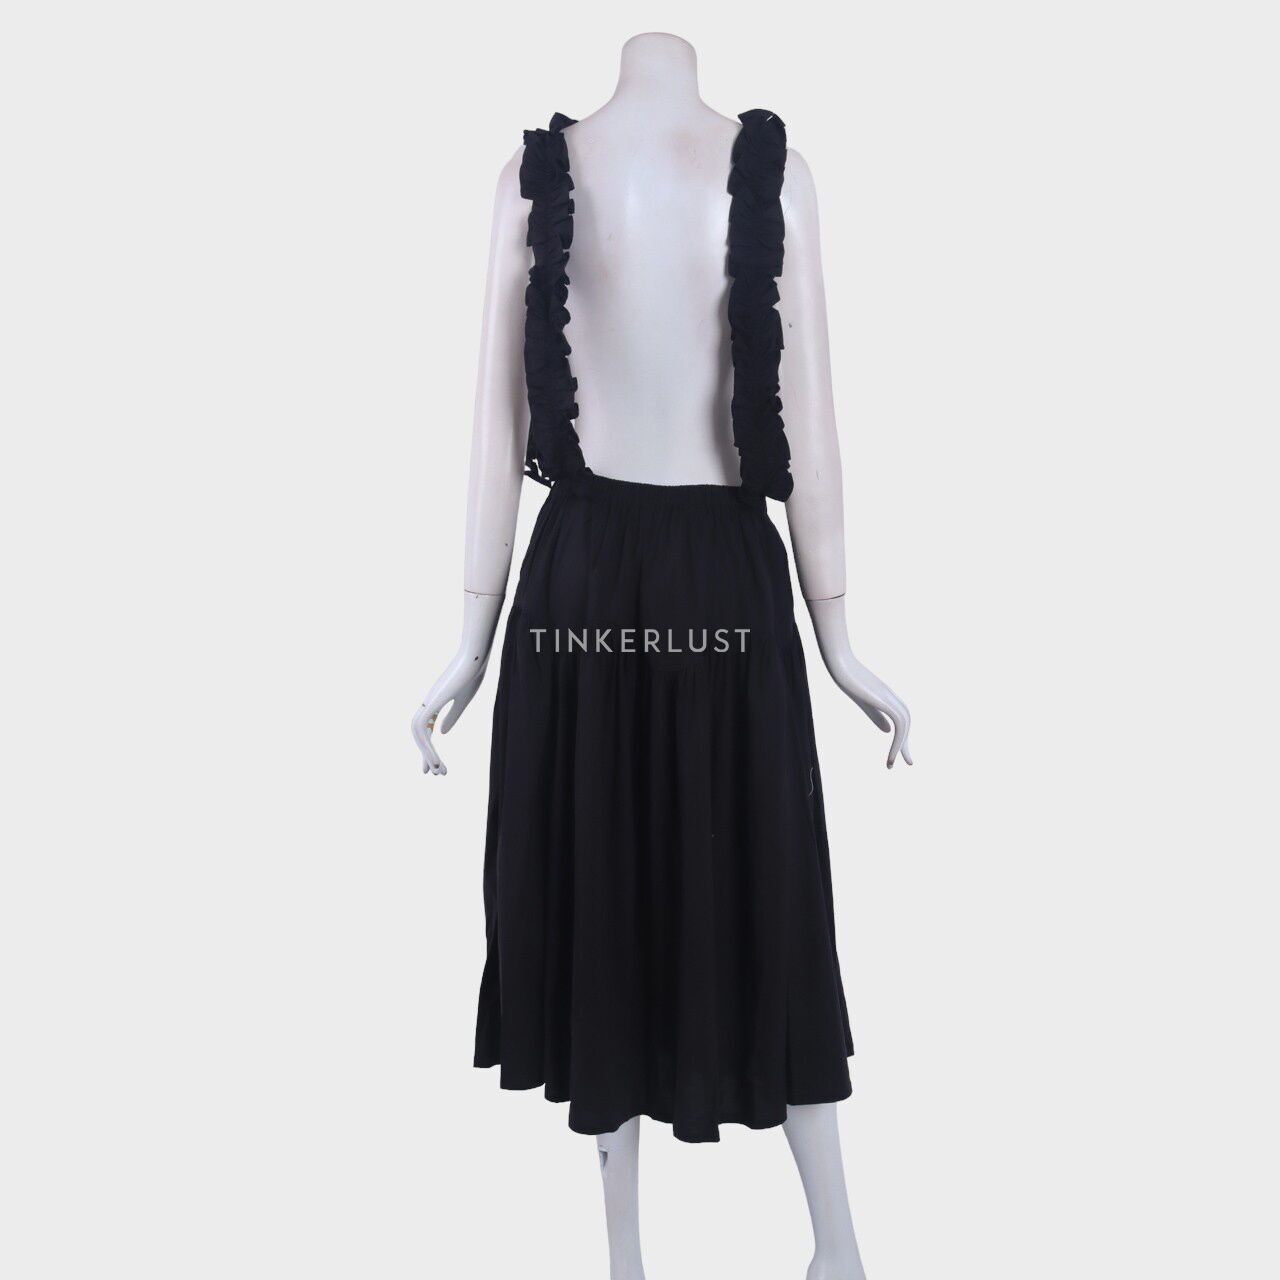 Argyle Oxford Black Midi Skirt